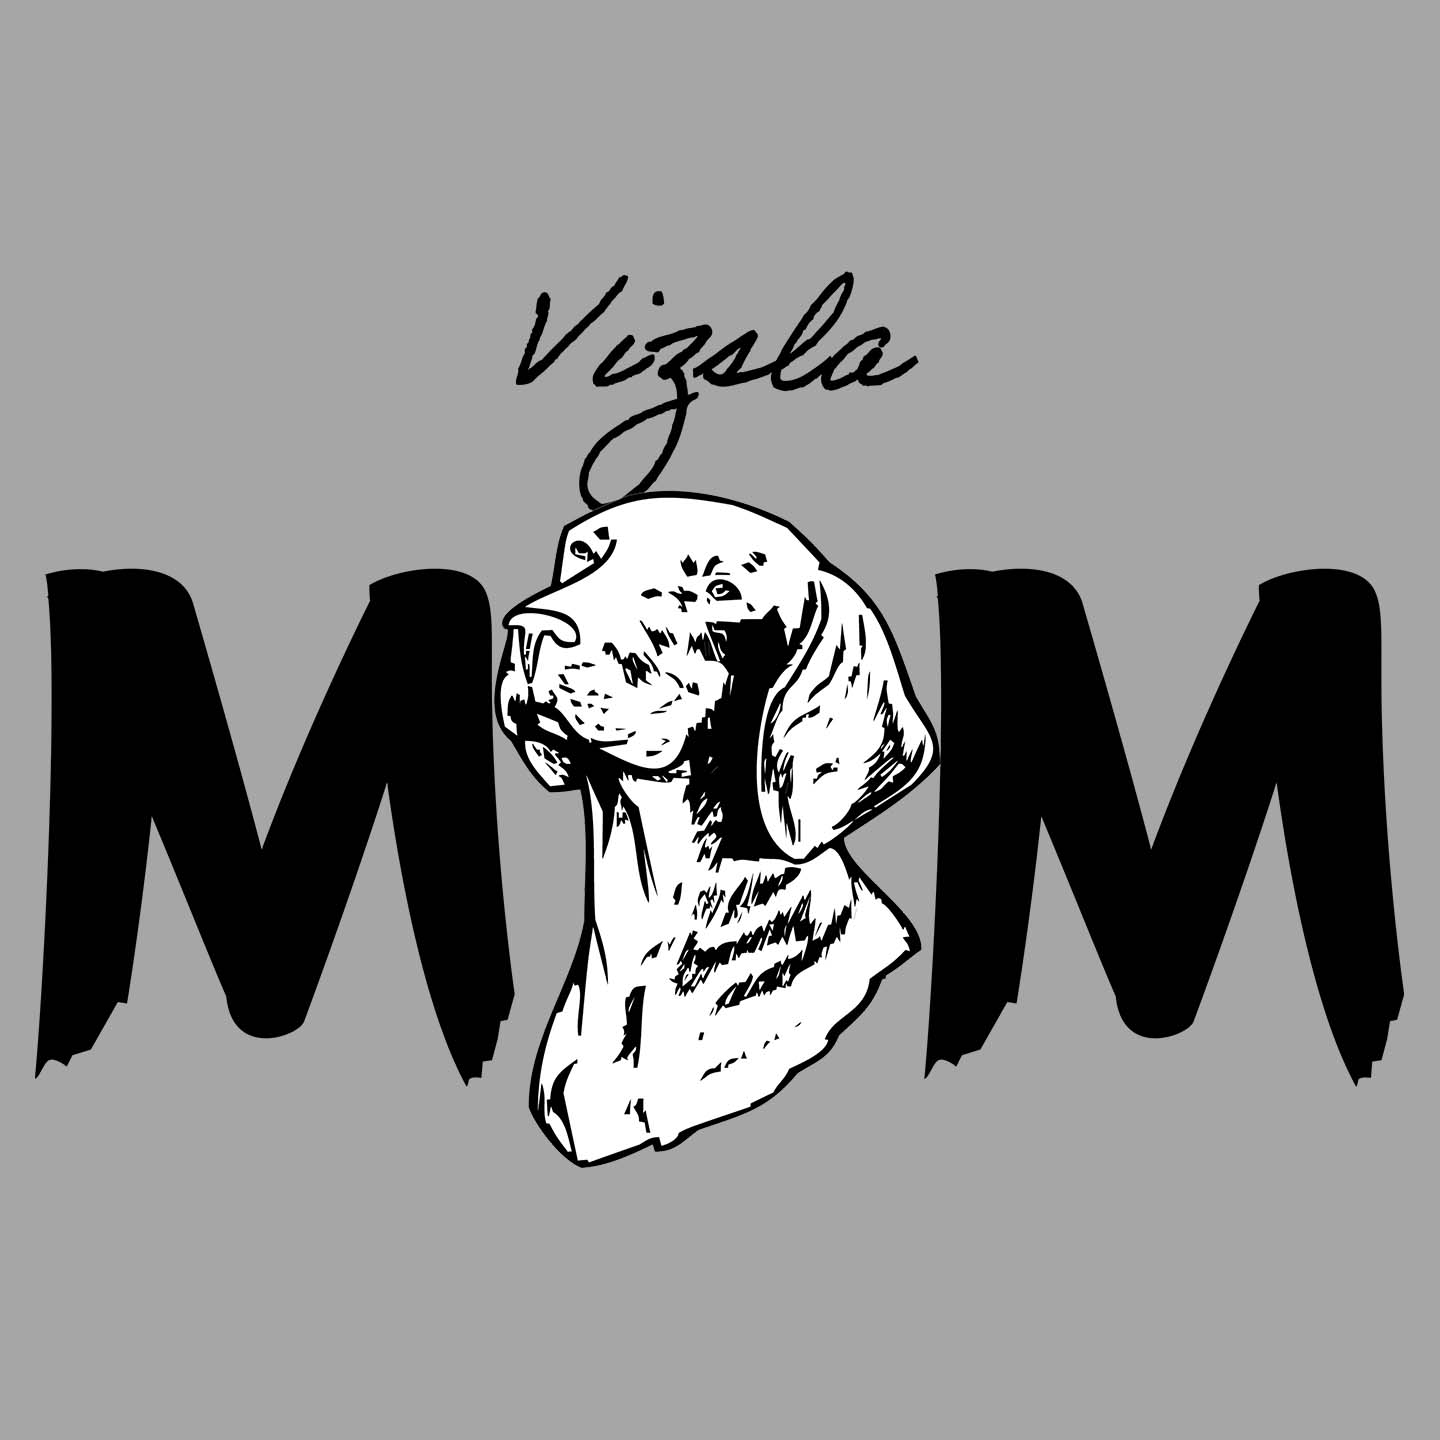 Vizsla Breed Mom - Women's V-Neck T-Shirt